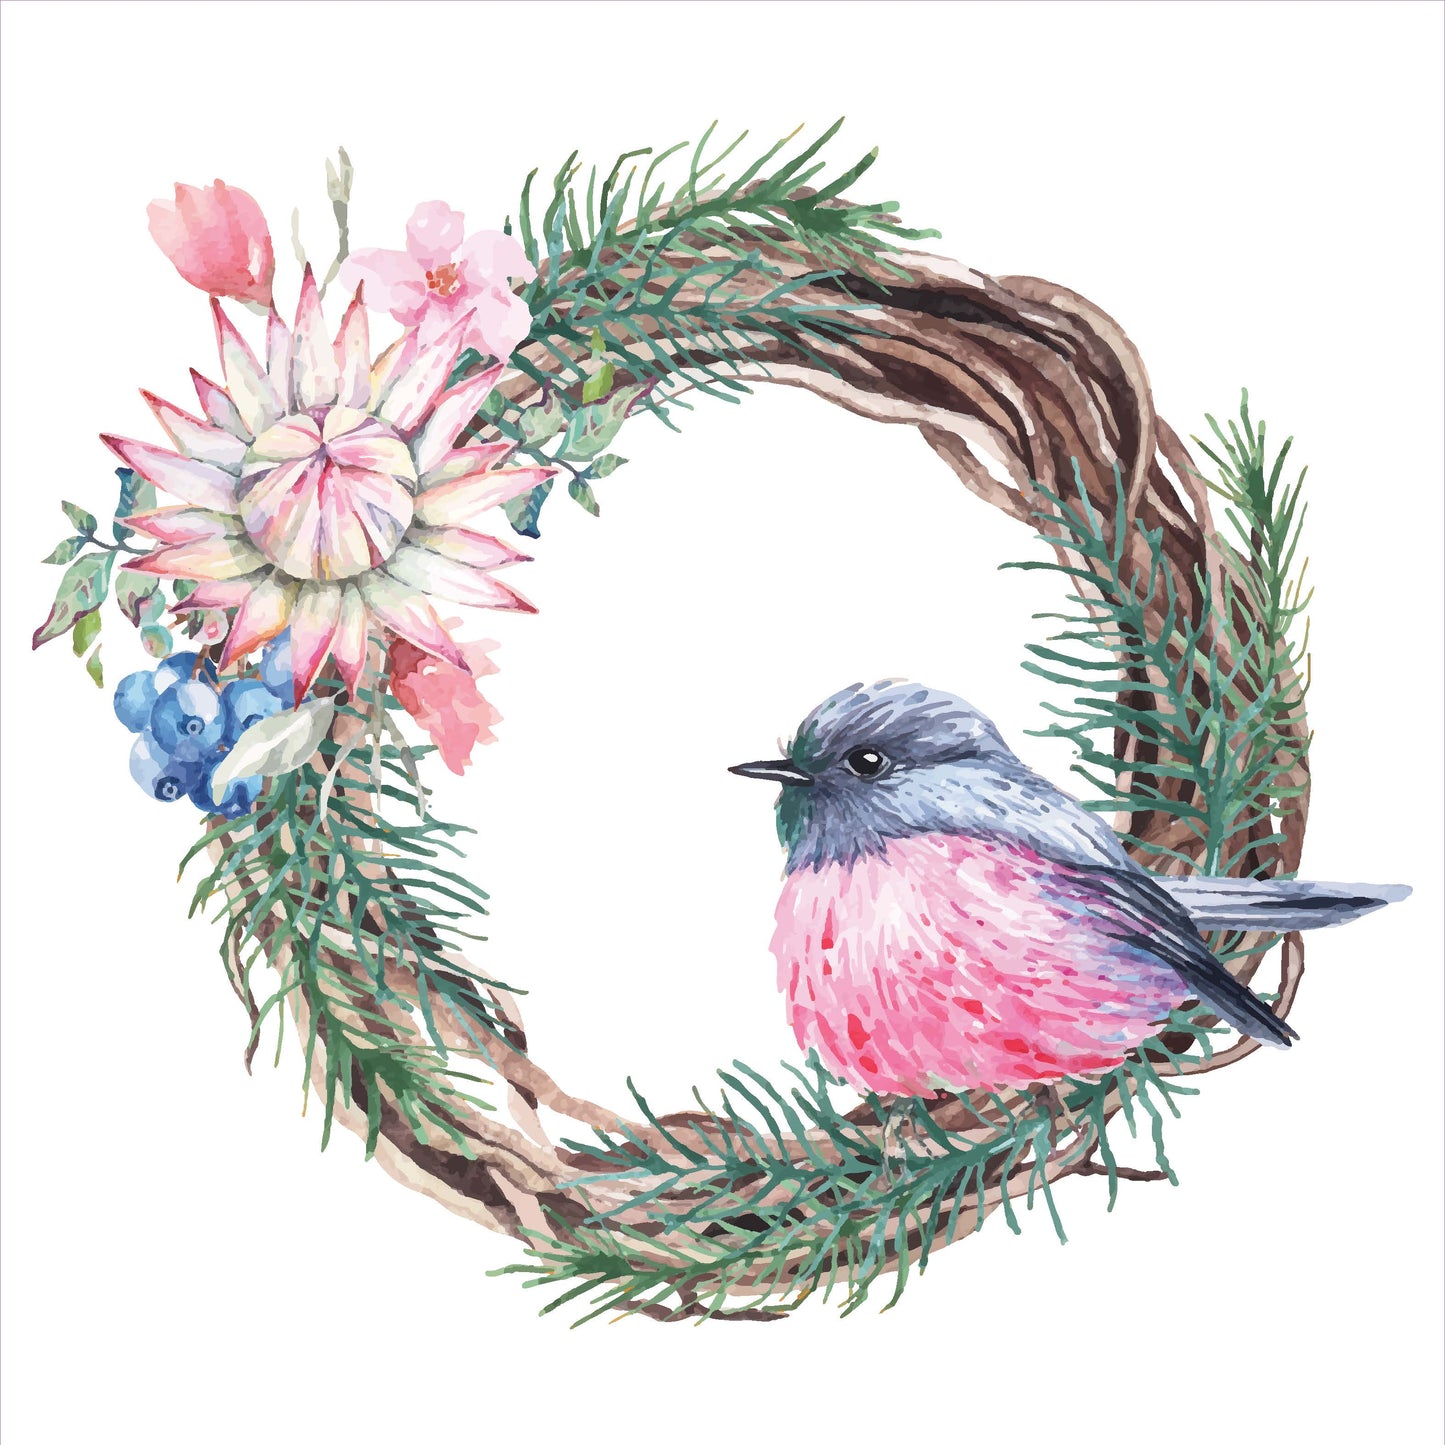 Bird in Wreath